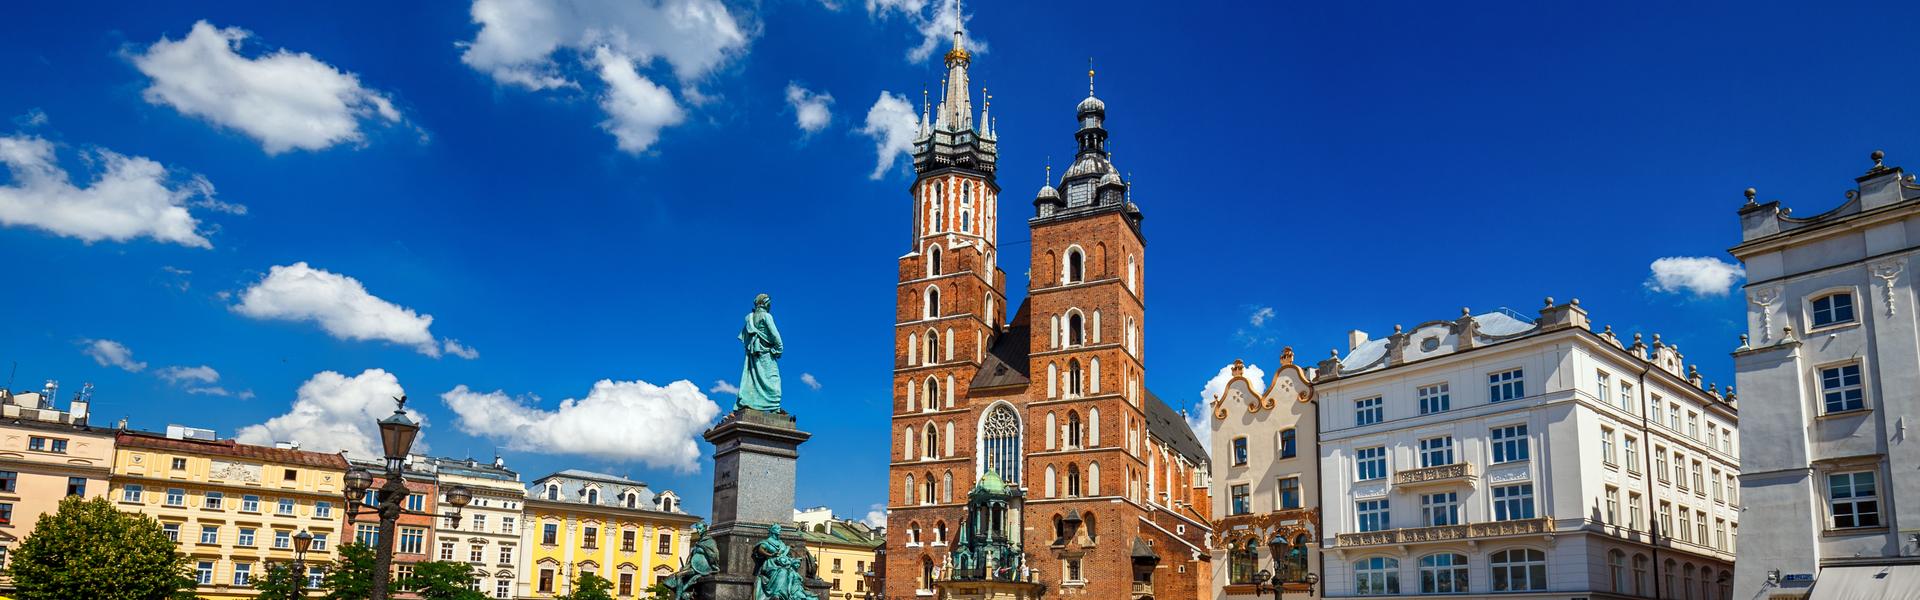 Imagen: Kościół Mariacki – jeden z najwspanialszych zabytków Krakowa i przykład sztuki gotyckiej. 800 lat historii